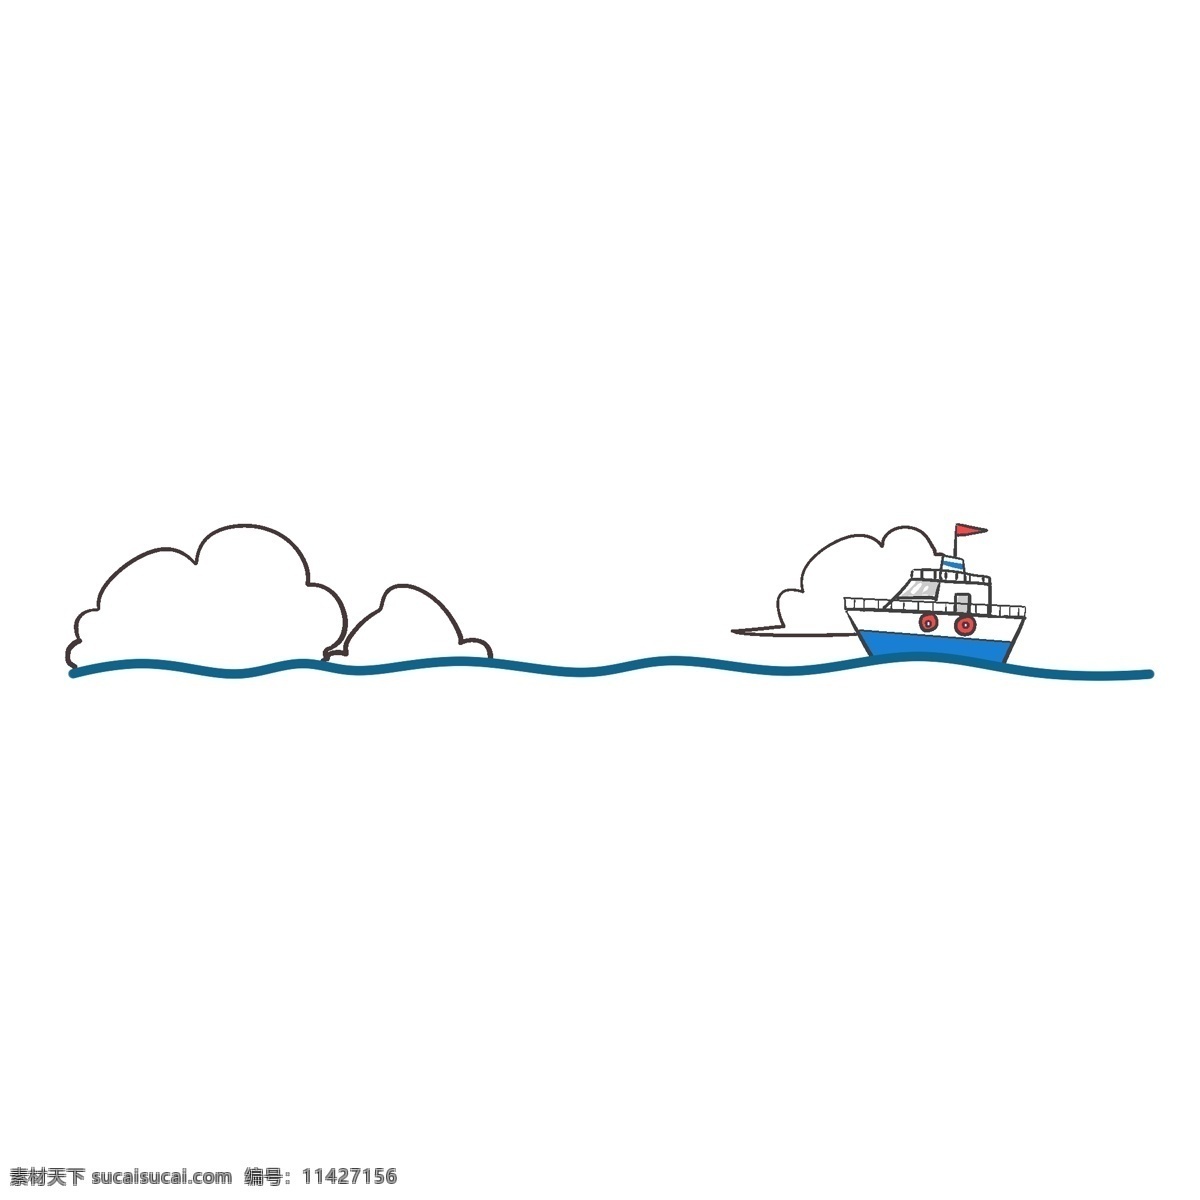 小船 分割线 插画 蓝色的分割线 分割线插画 卡通插画 简易分割线 小船的分割线 游走的小船